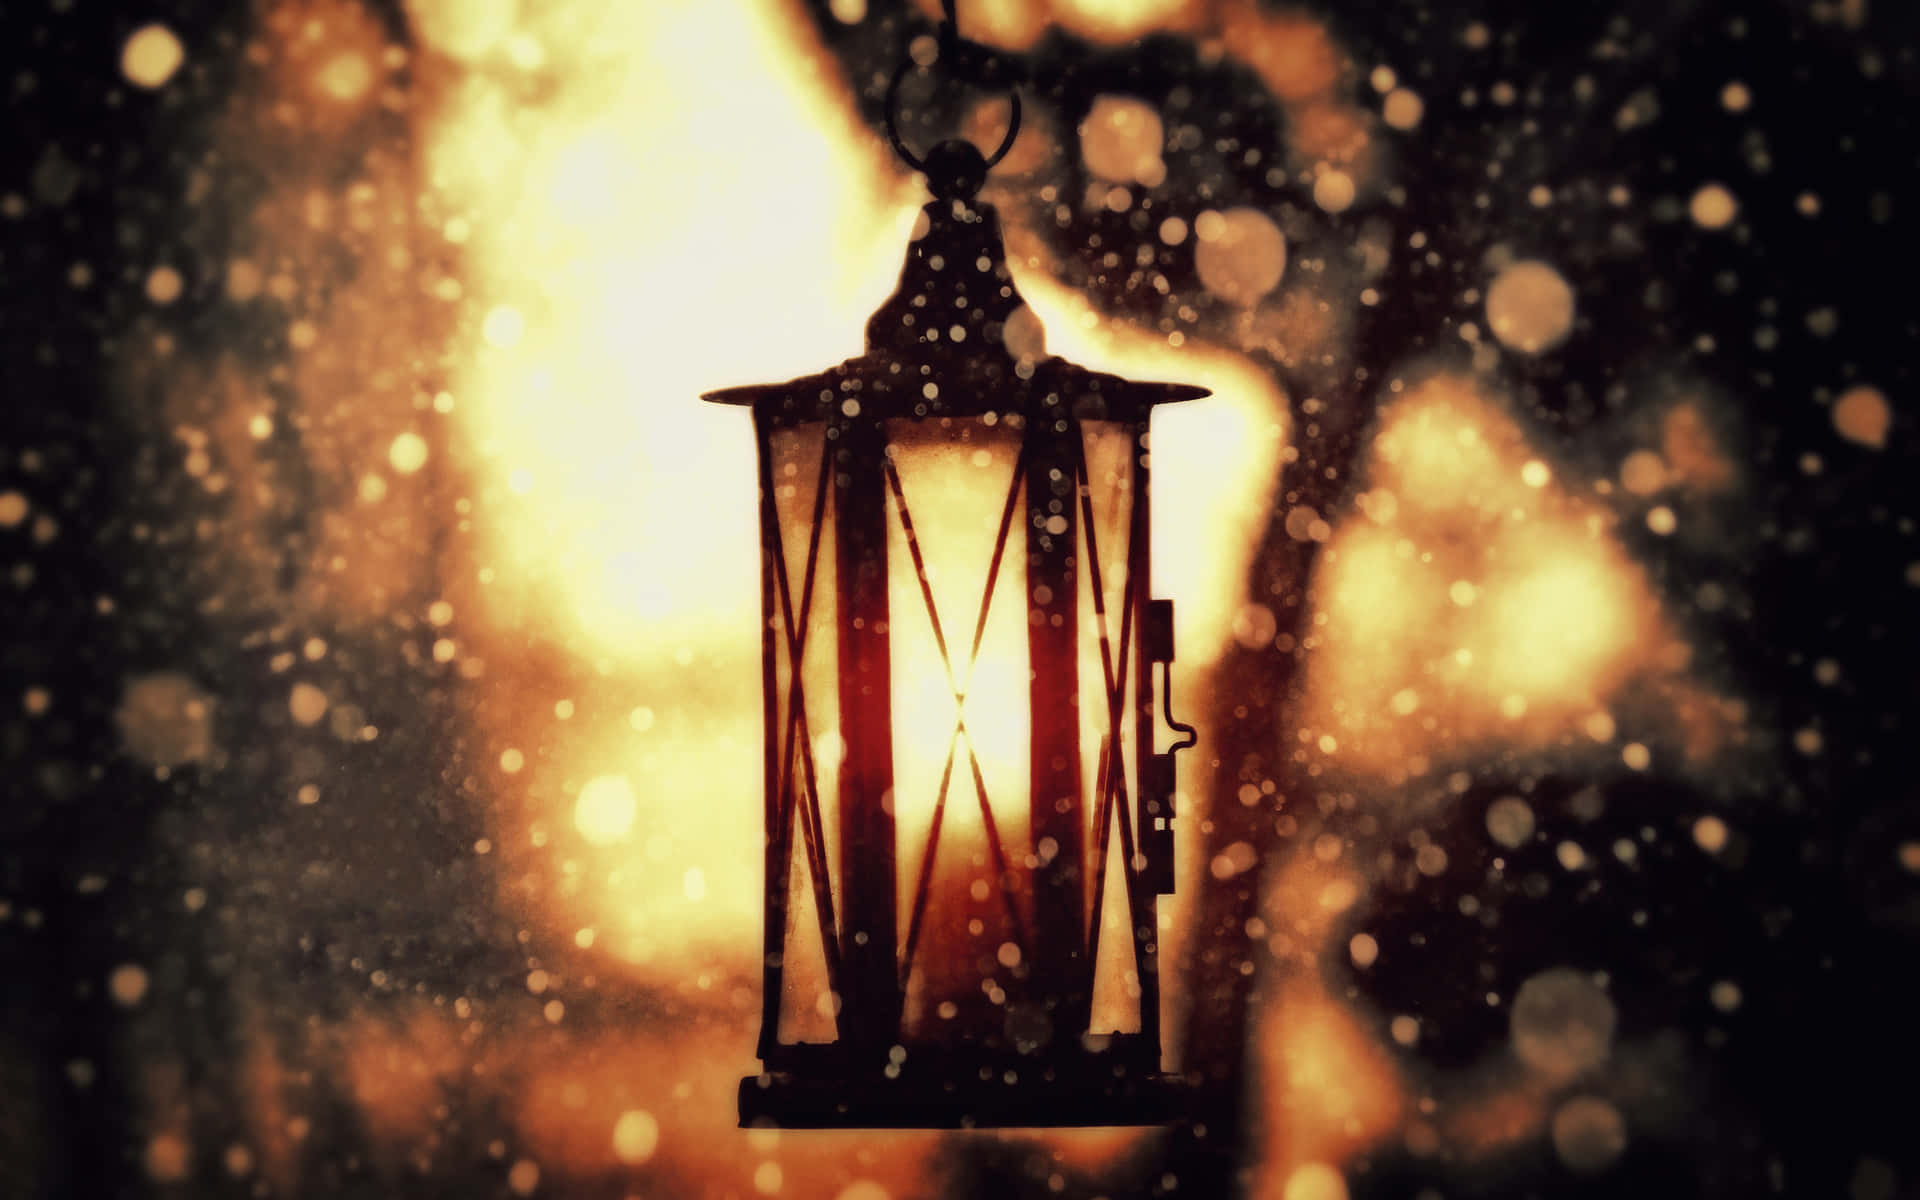 A glowing lantern illuminating the night